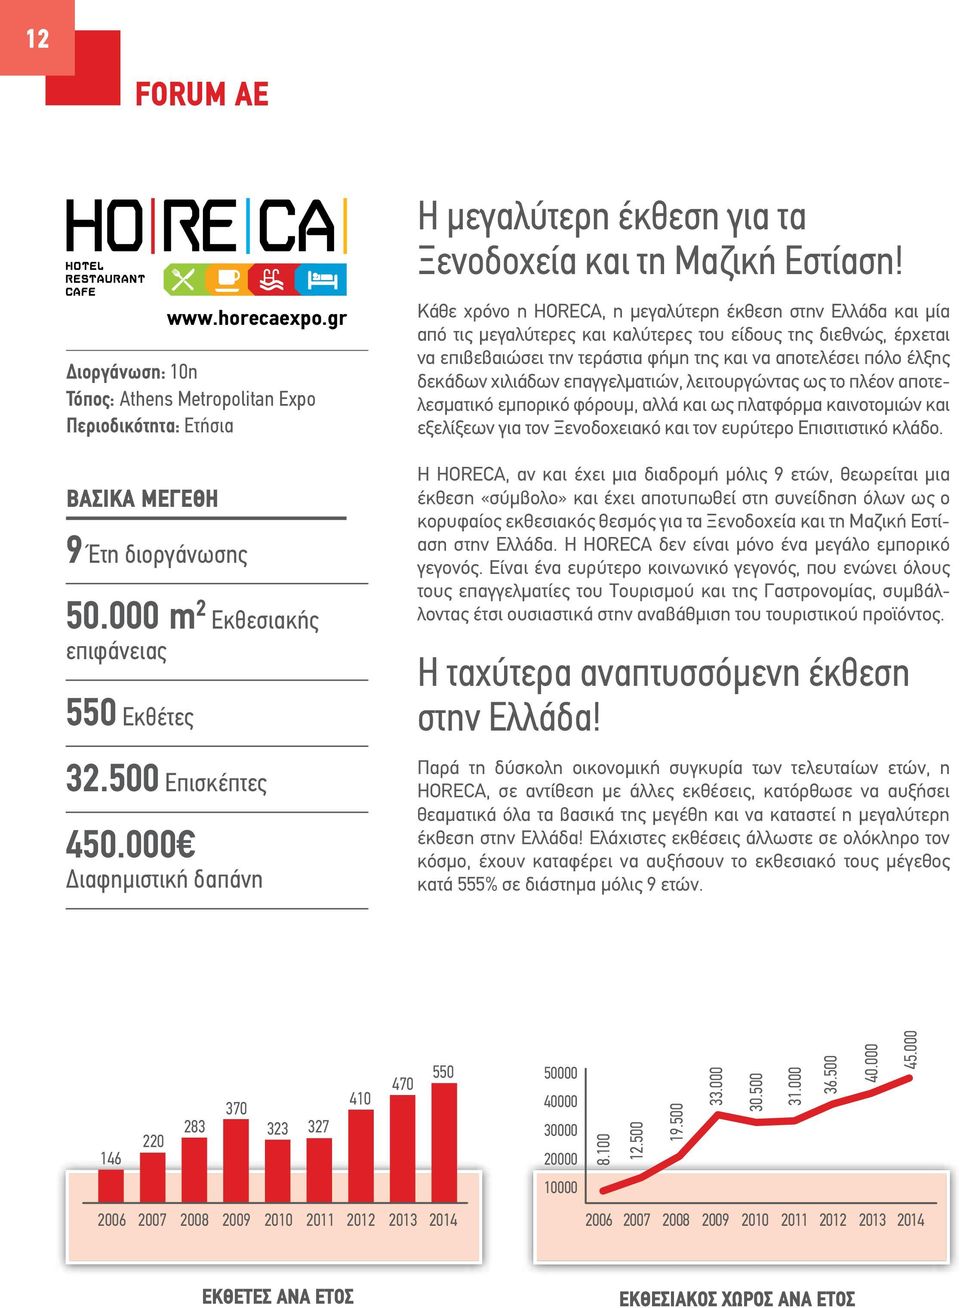 000 Διαφημιστική δαπάνη Κάθε χρόνο η HORECA, η μεγαλύτερη έκθεση στην Ελλάδα και μία από τις μεγαλύτερες και καλύτερες του είδους της διεθνώς, έρχεται να επιβεβαιώσει την τεράστια φήμη της και να